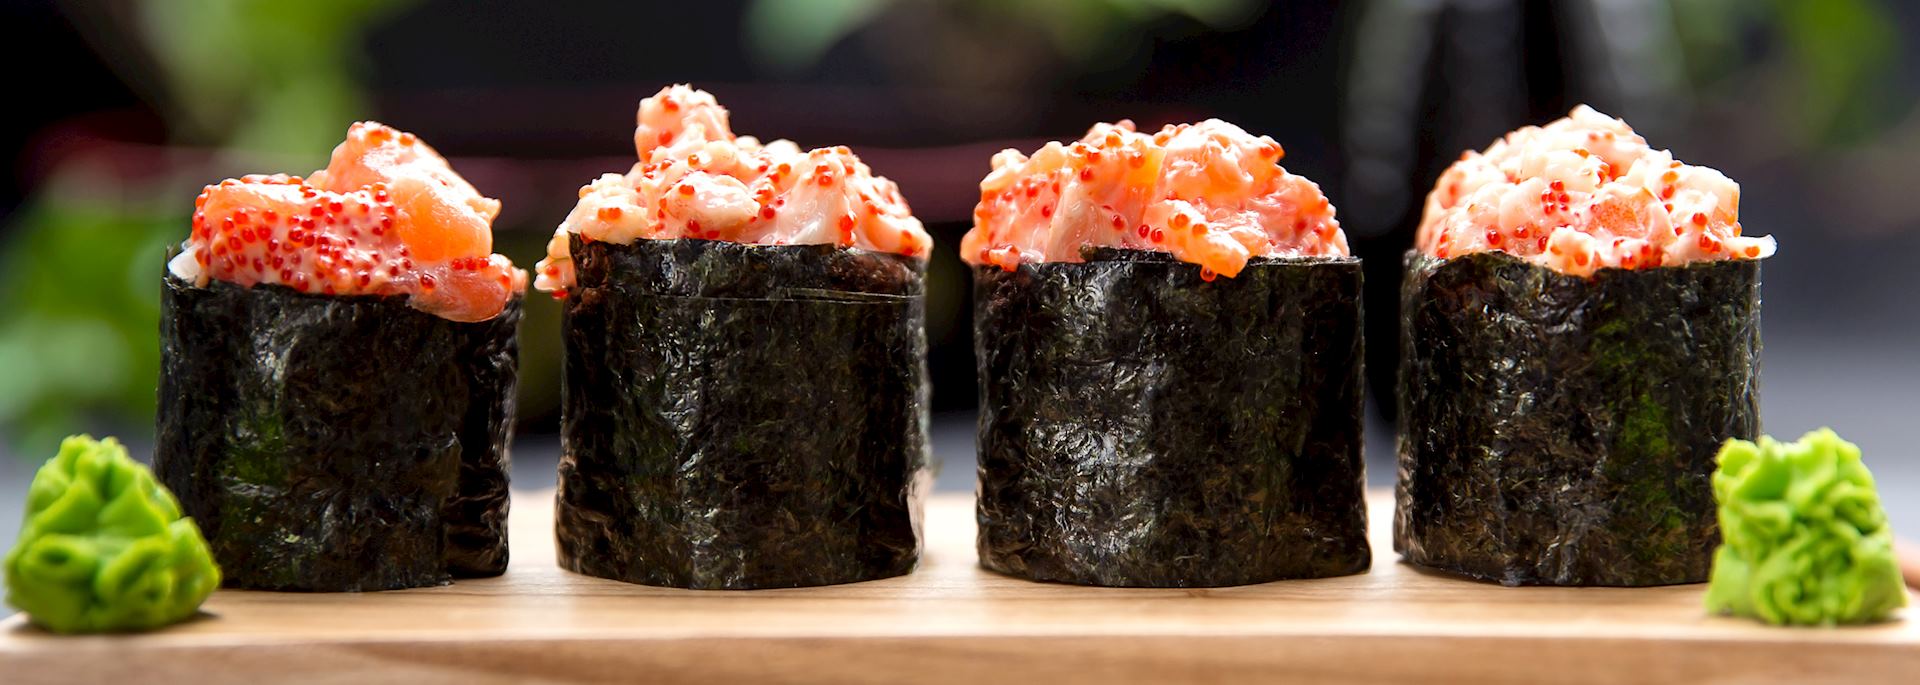 Sushi Gunkan maki with crab and salmon